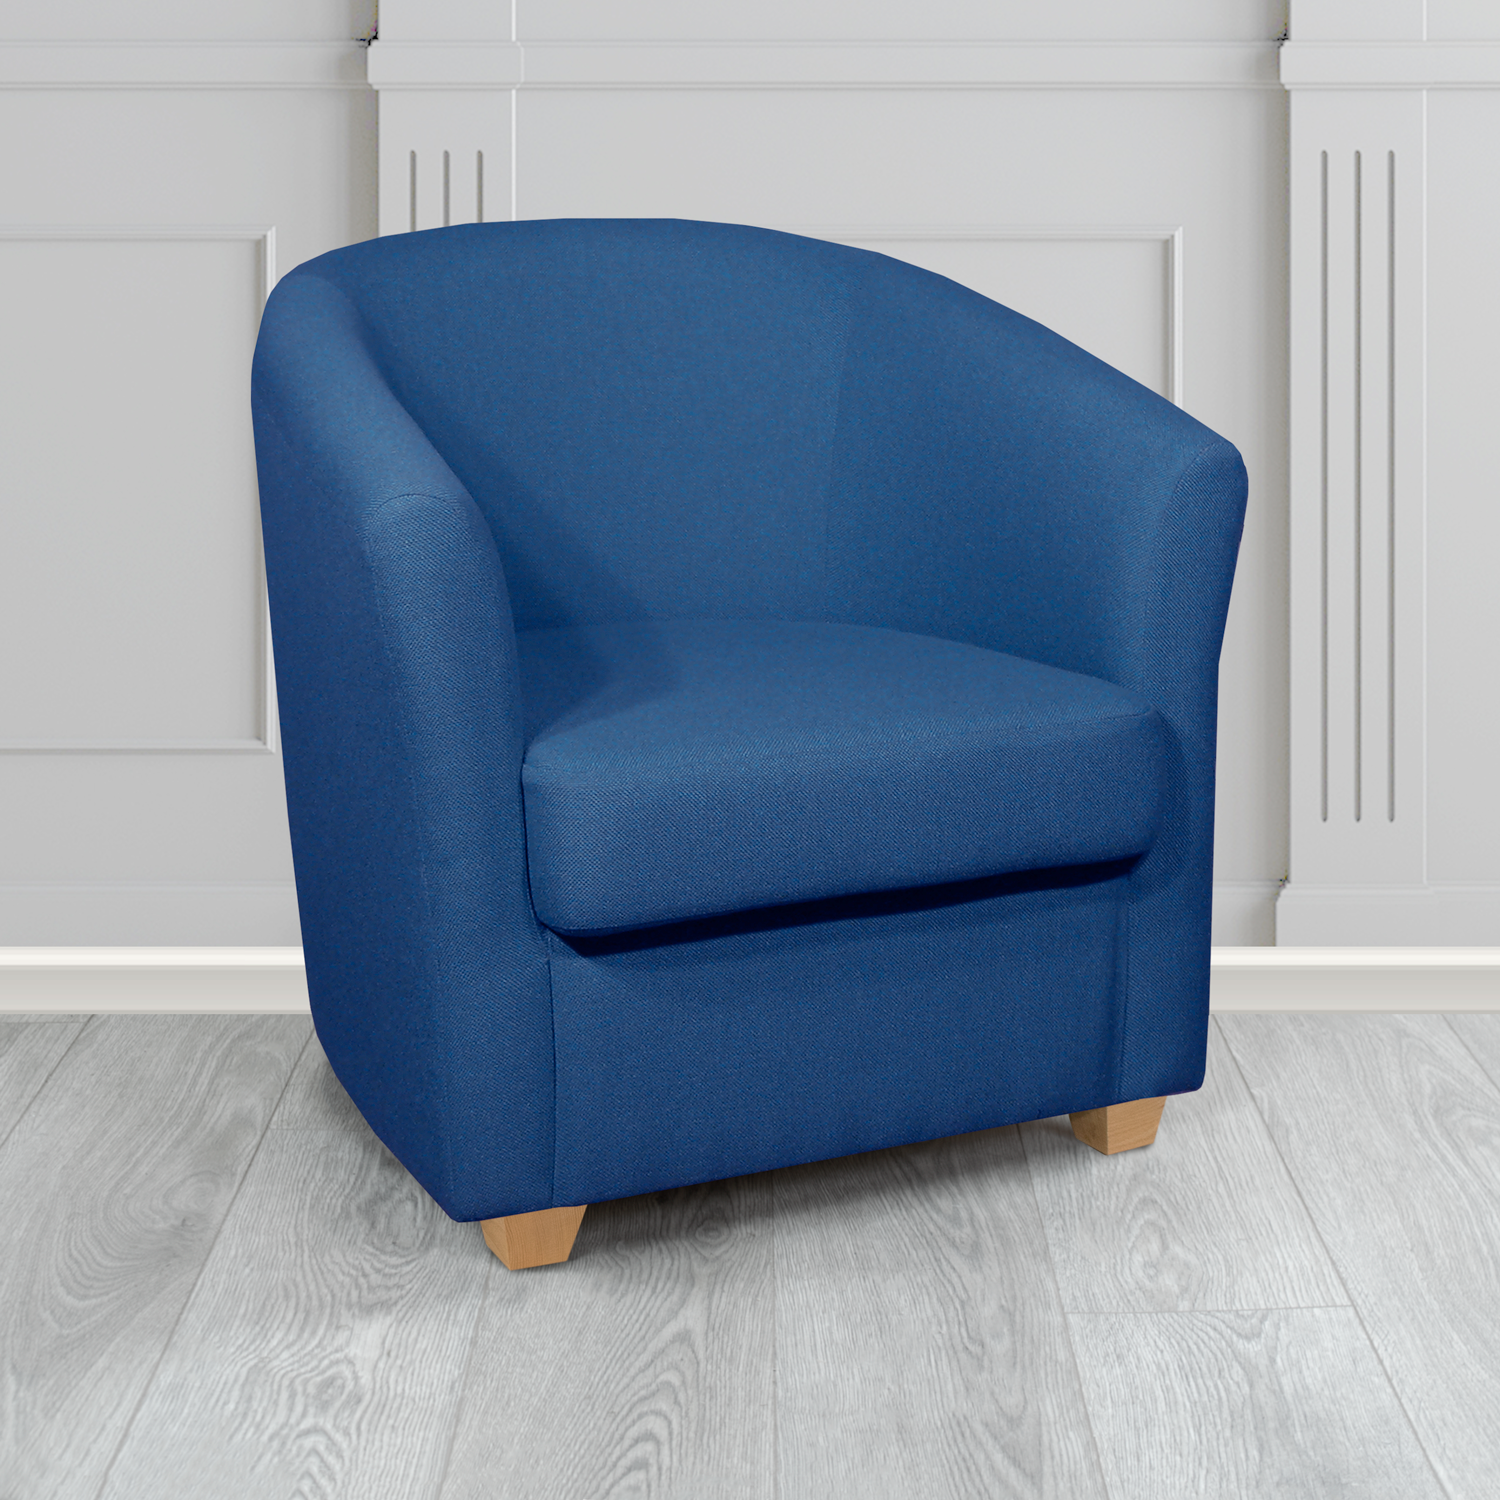 Cannes Tub Chair in Mainline Plus Bluenote IF149 Crib 5 Fabric - The Tub Chair Shop